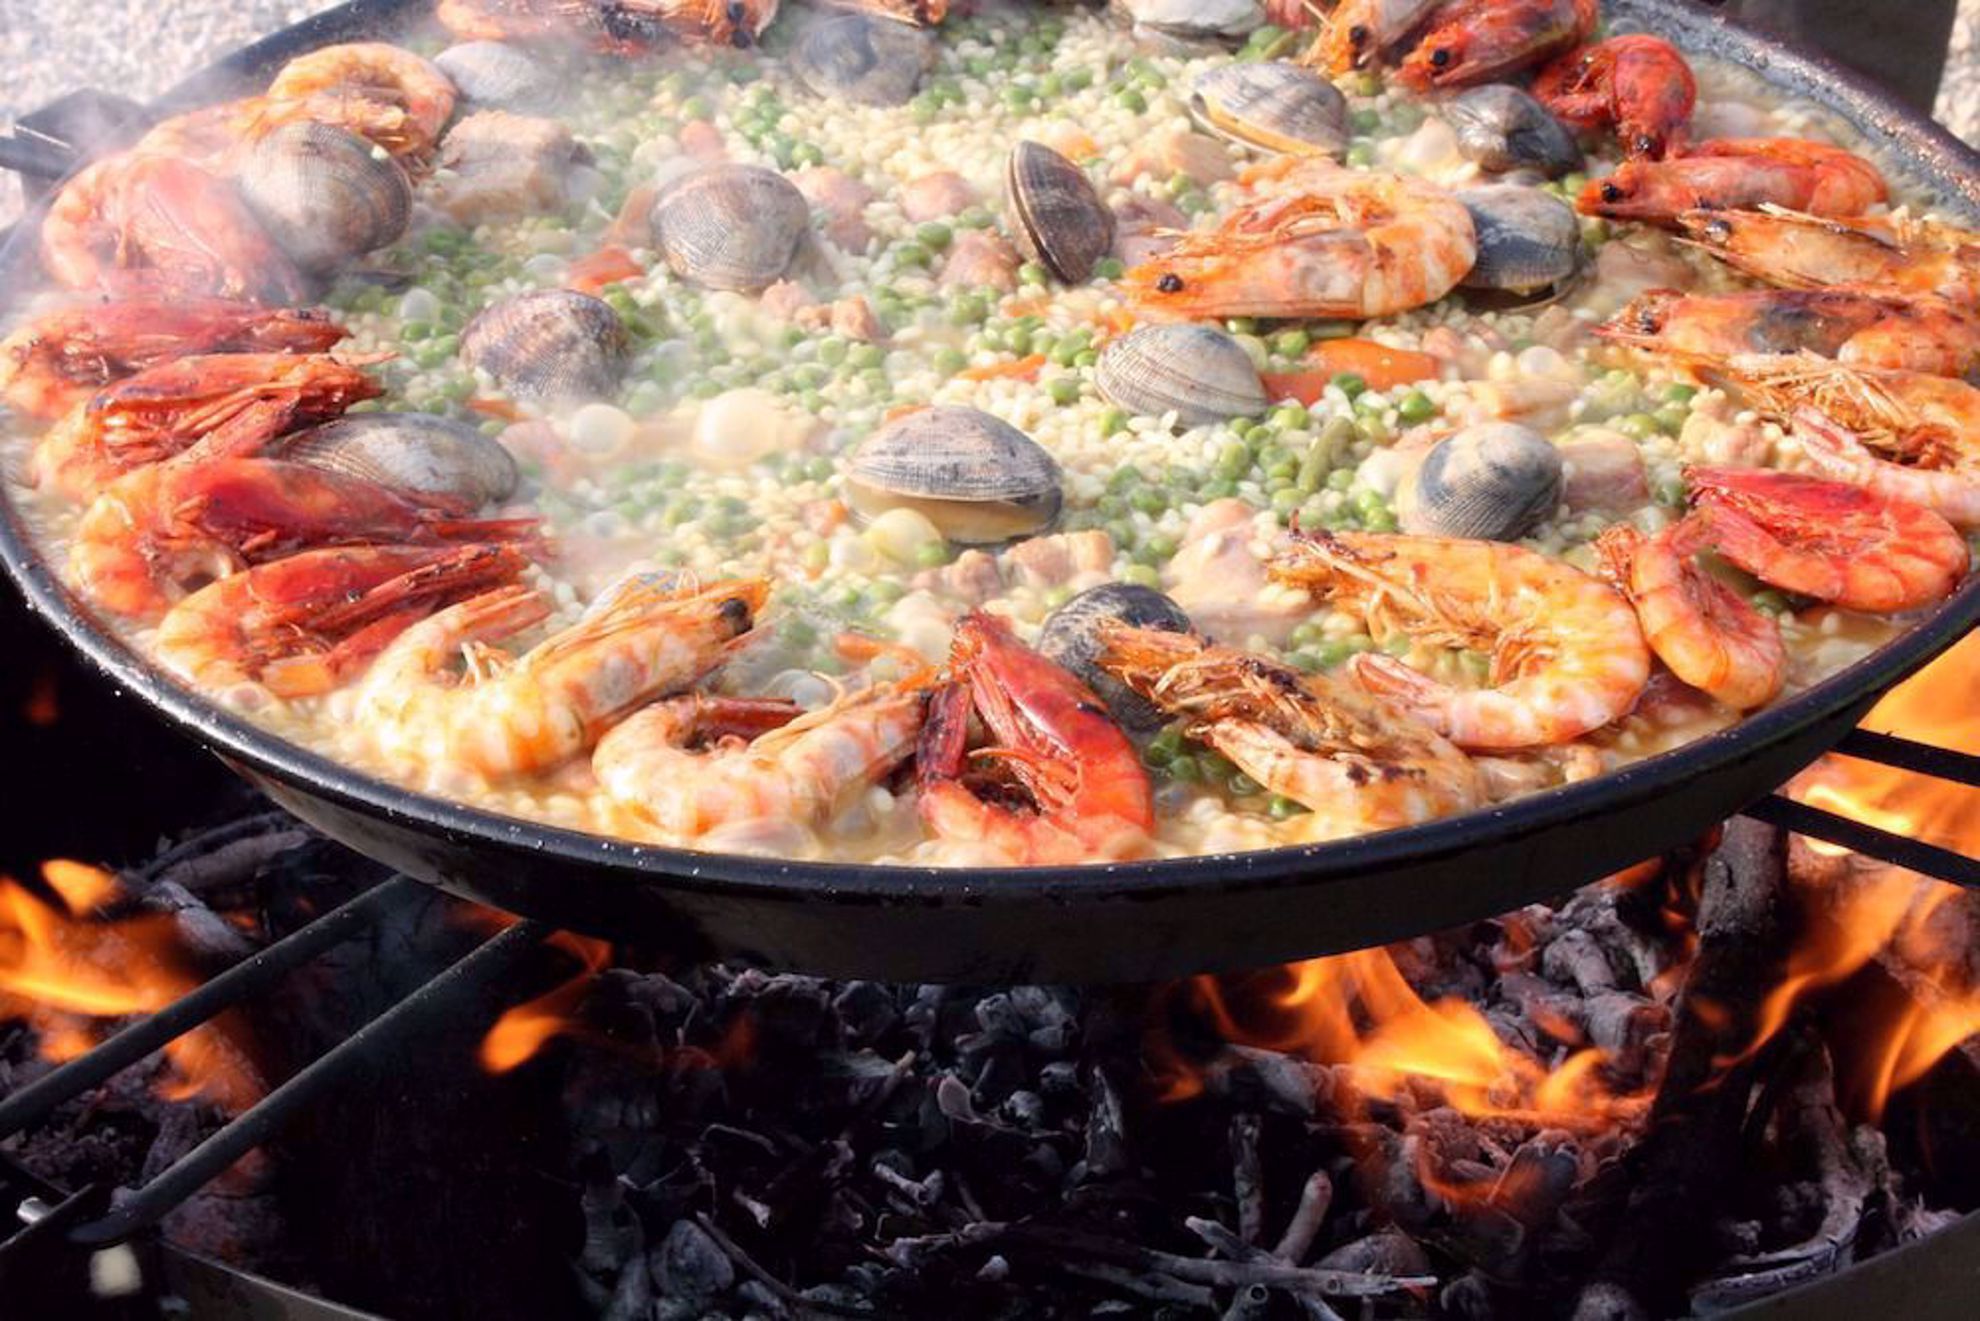 Paella seafood dish